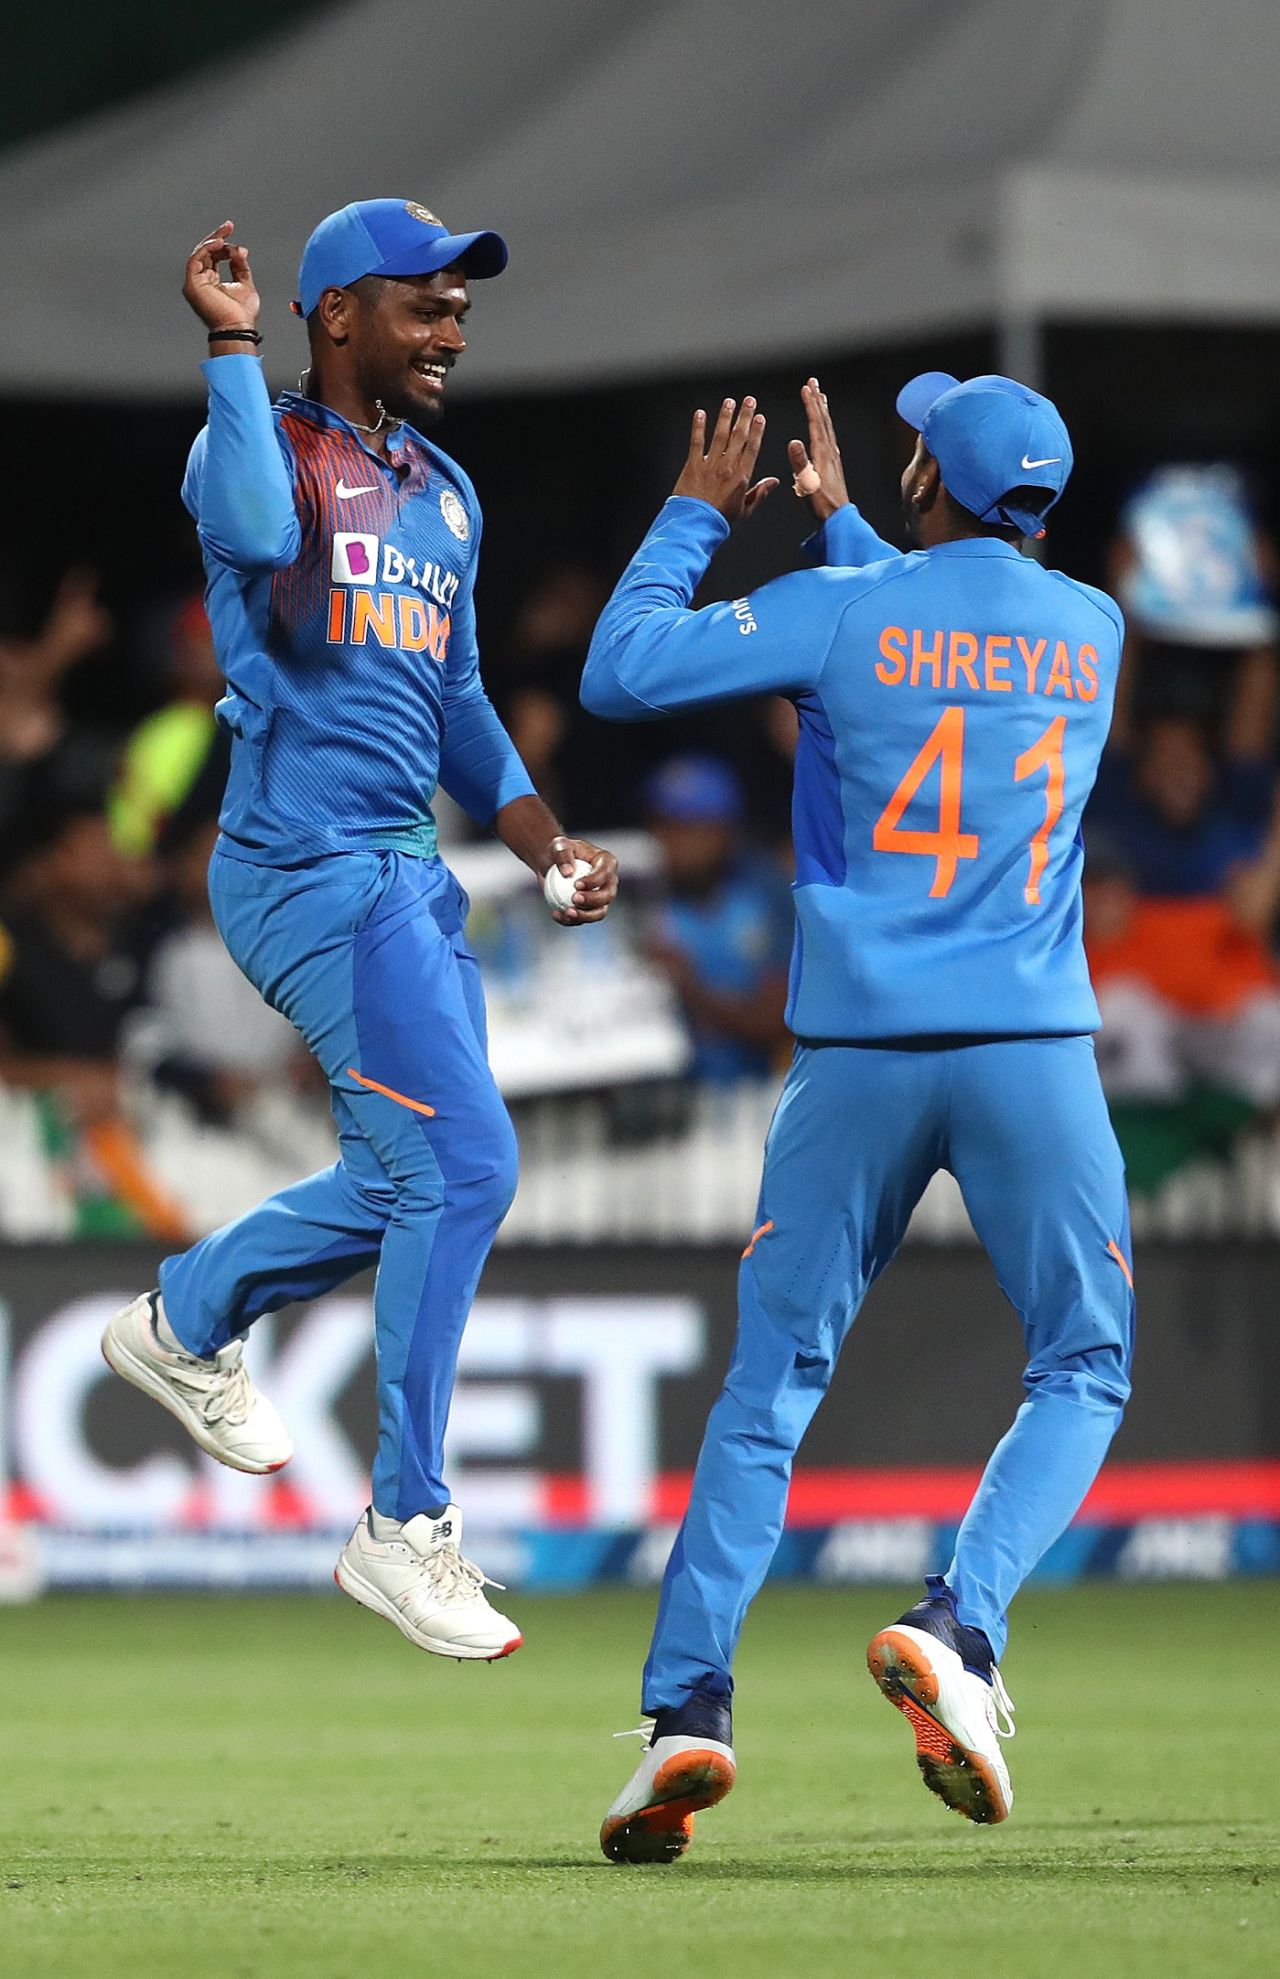 Sanju Samson and Shreyas Iyer celebrate a wicket, New Zealand v India, 3rd T20I, Hamilton, January 29, 2020